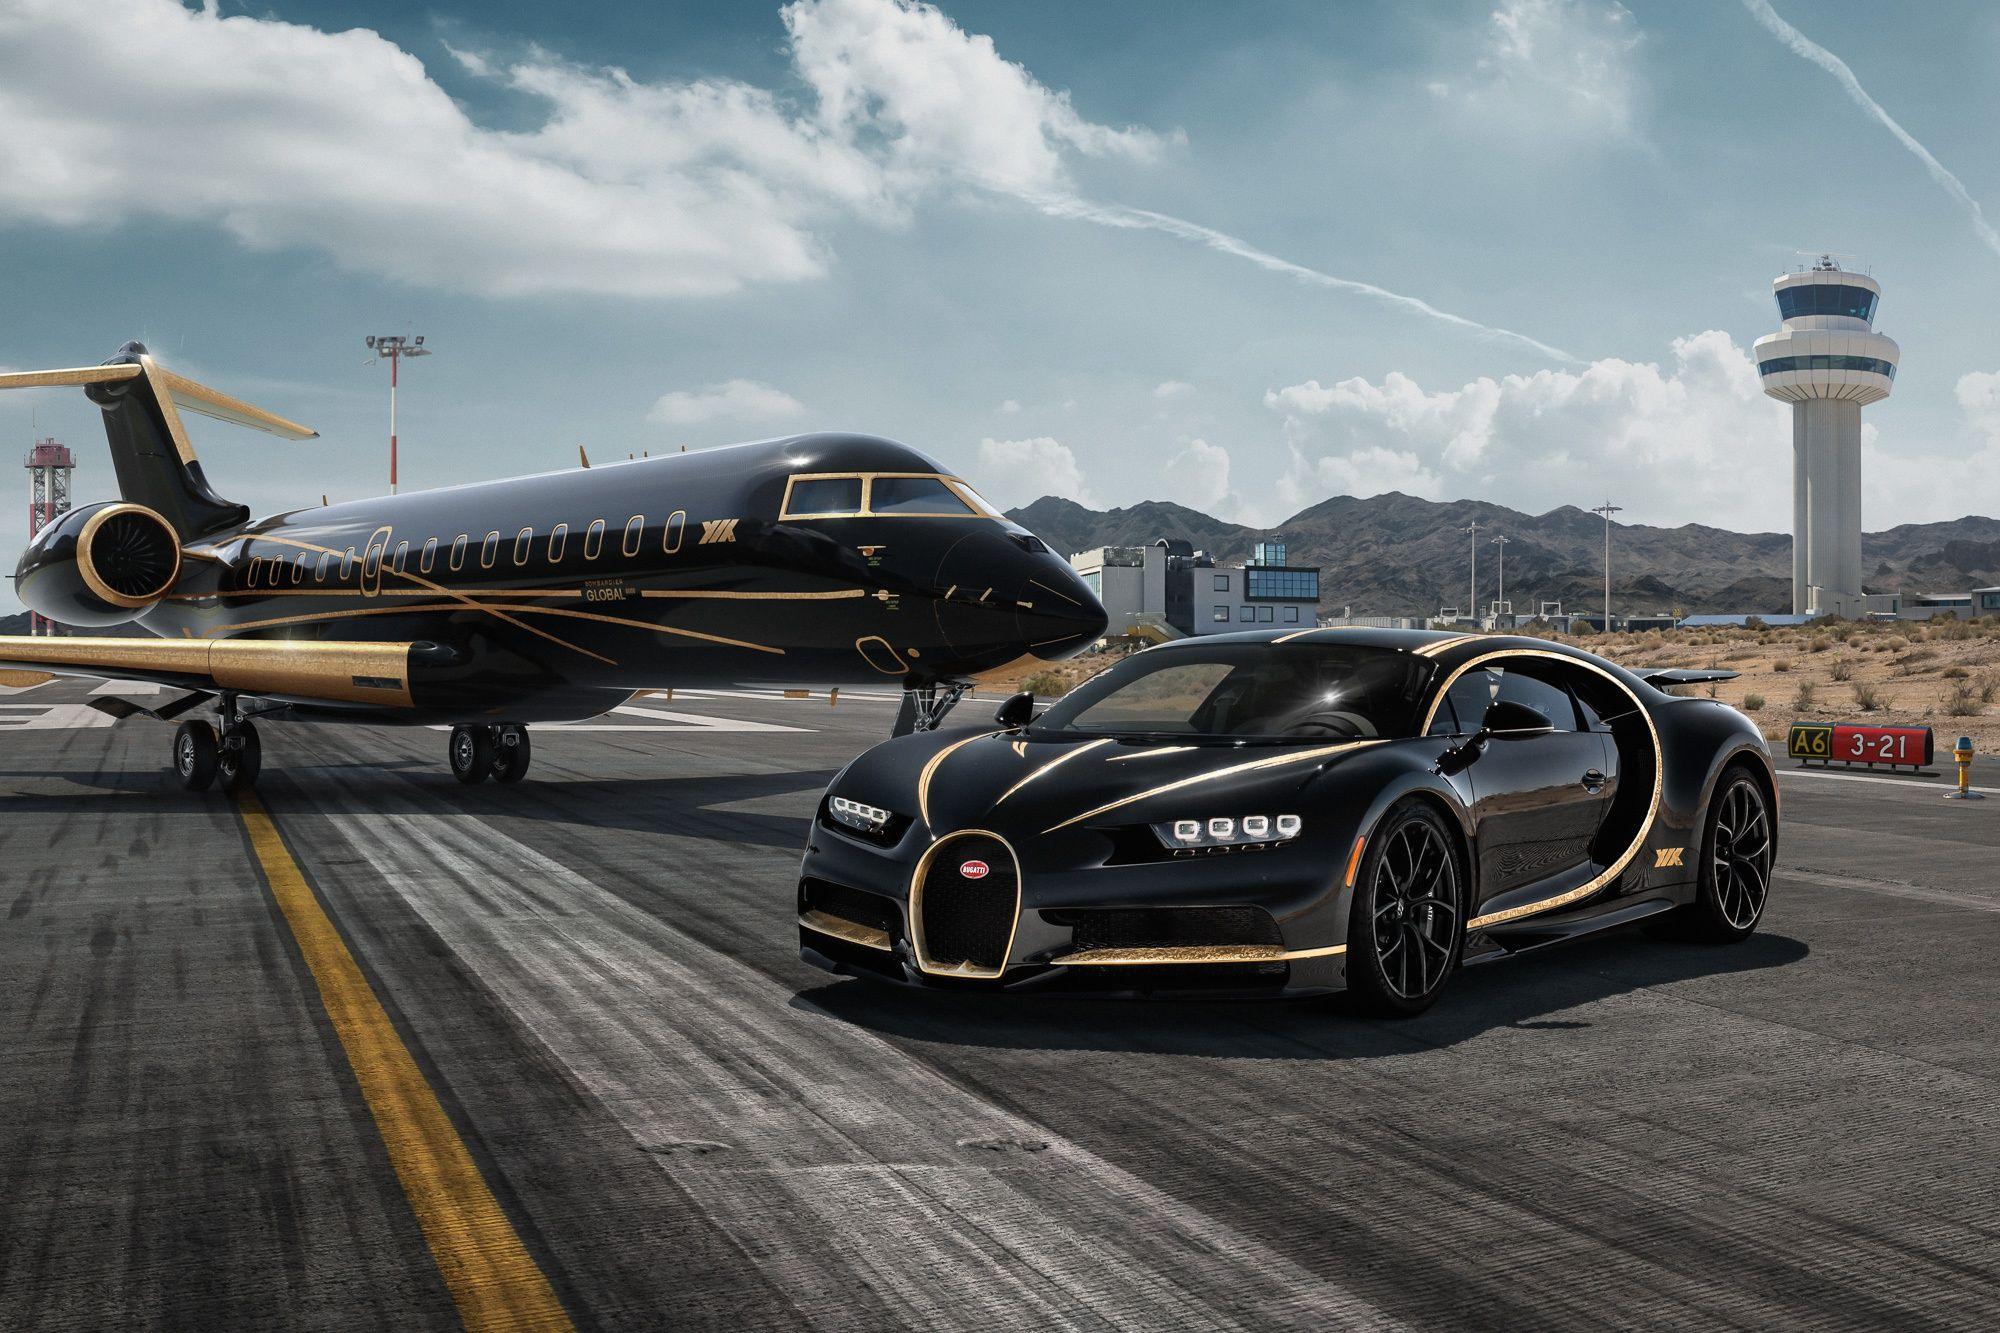 Bugatti Chiron Black, Gold, Aircraft, Supercar, Luxury, Private